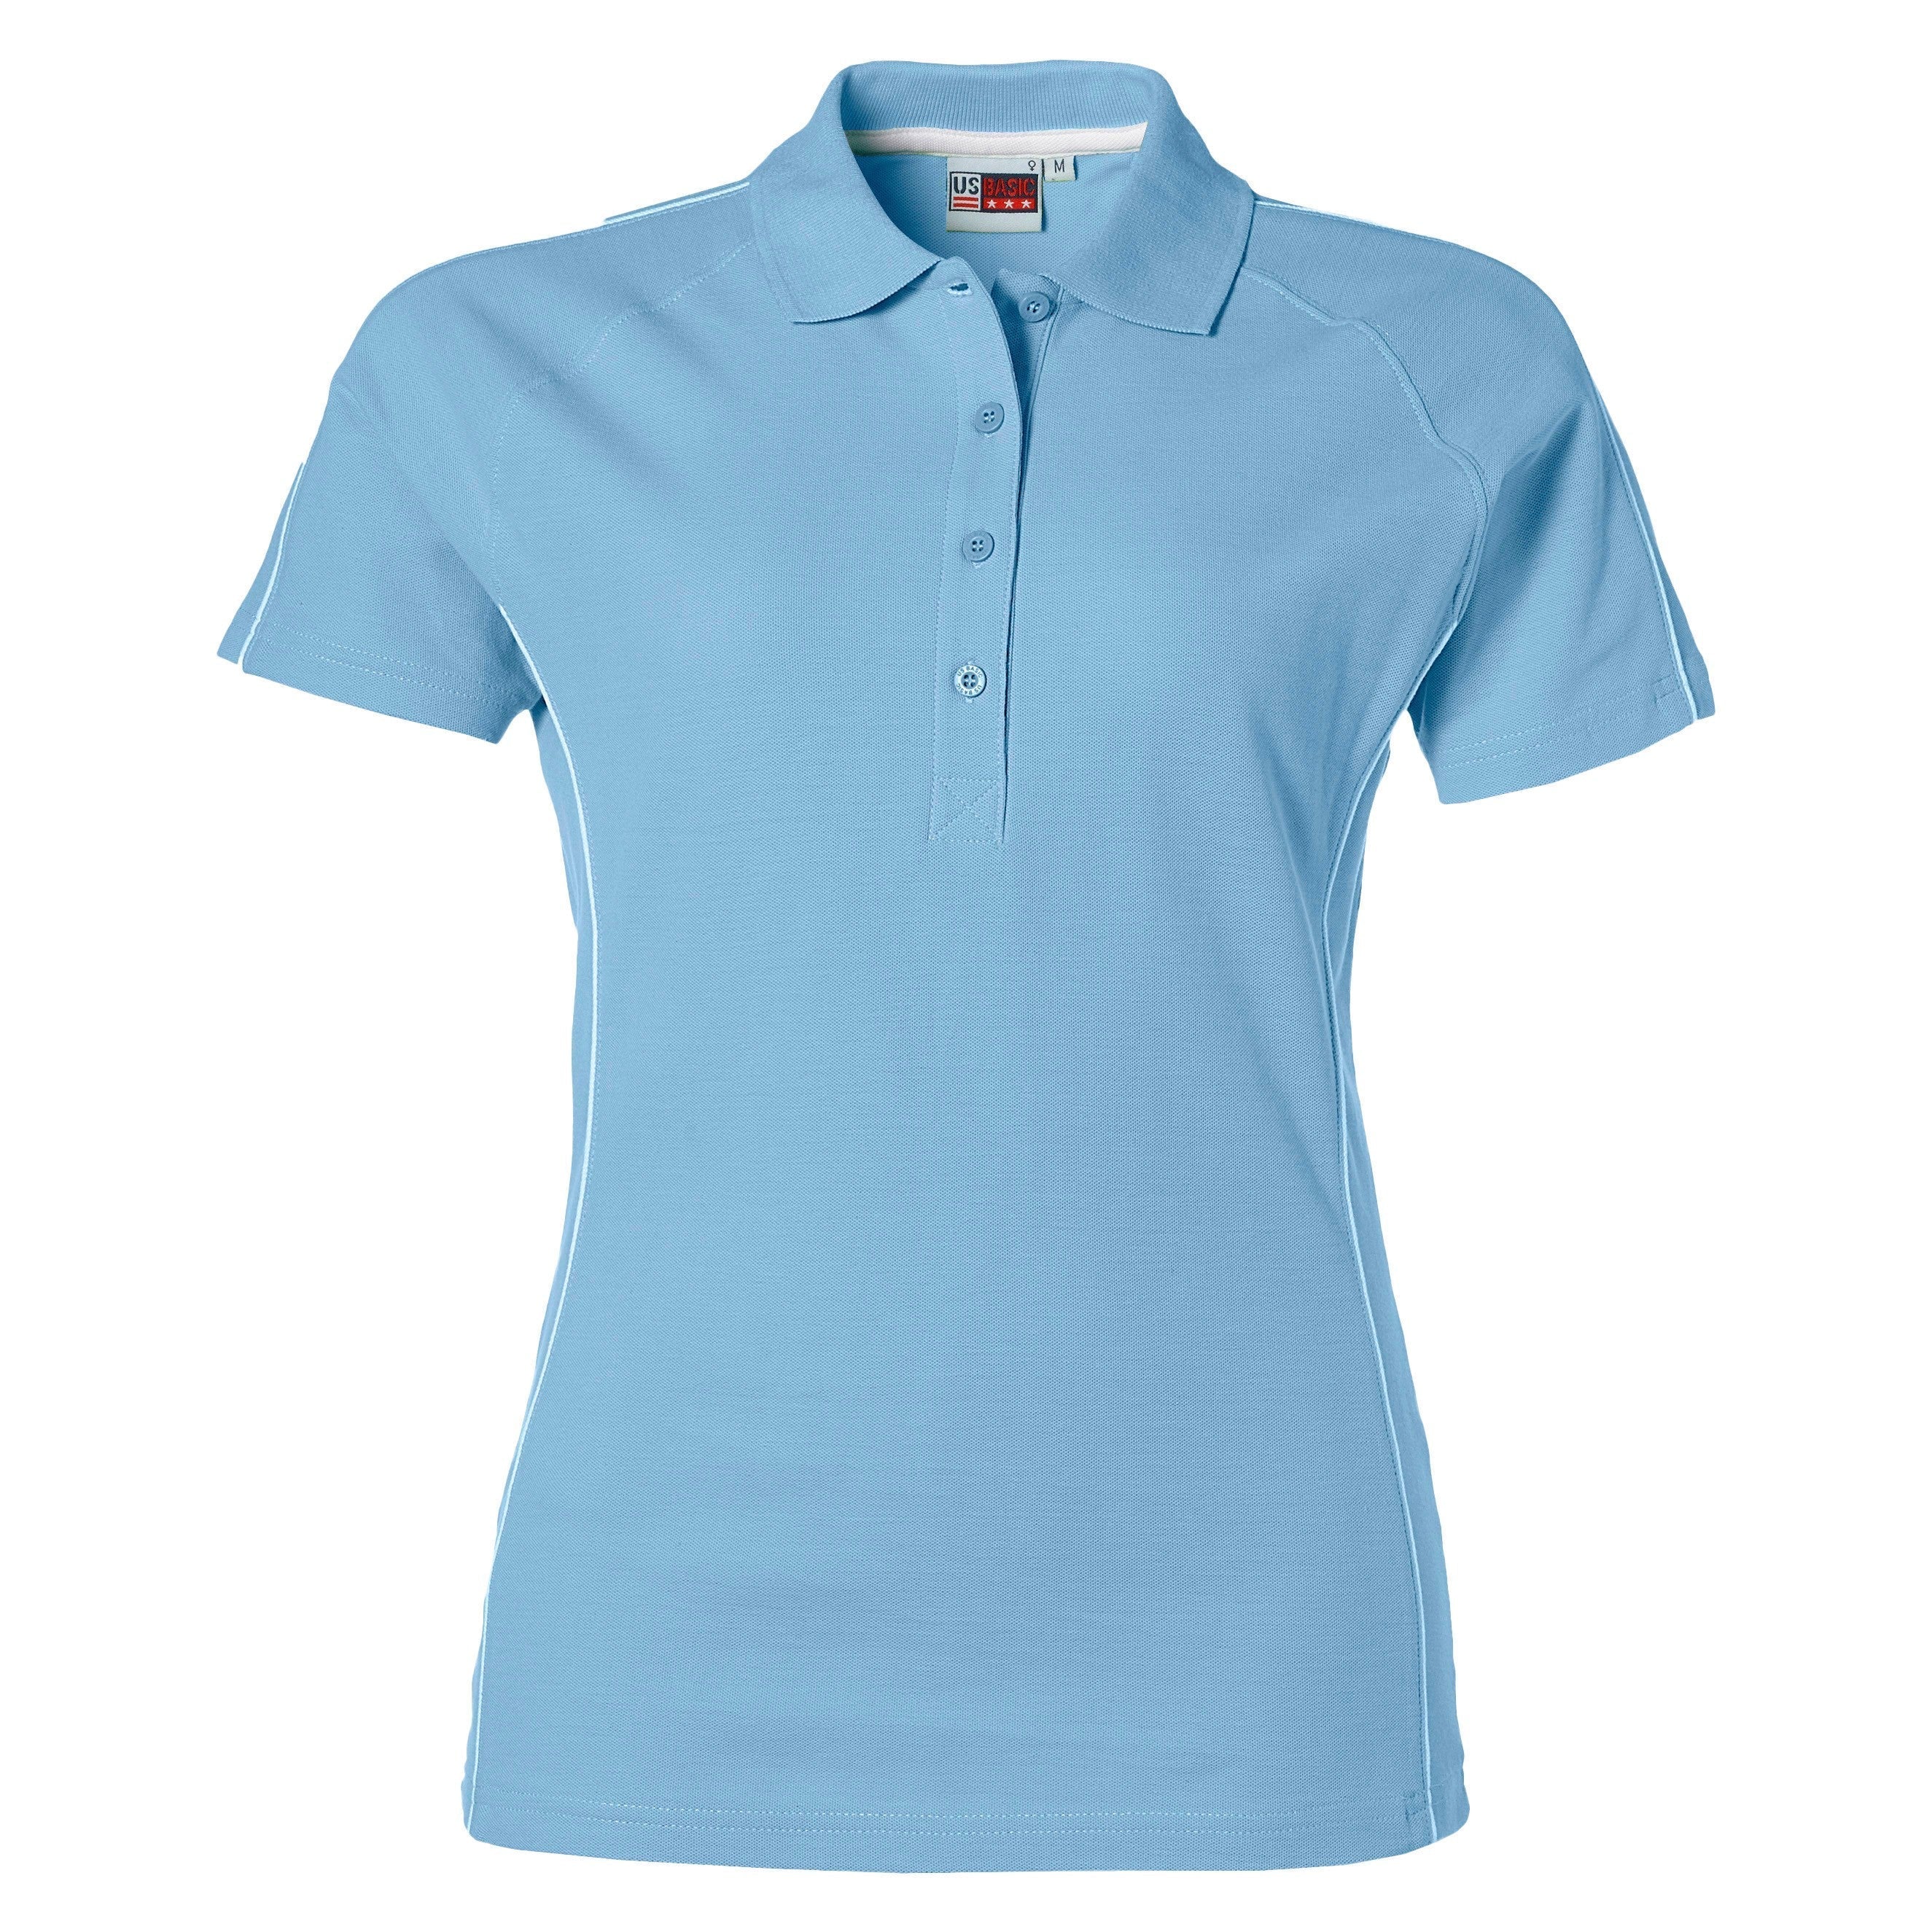 Ladies Pontiac Golf Shirt - Navy Only-2XL-Light Blue-LB